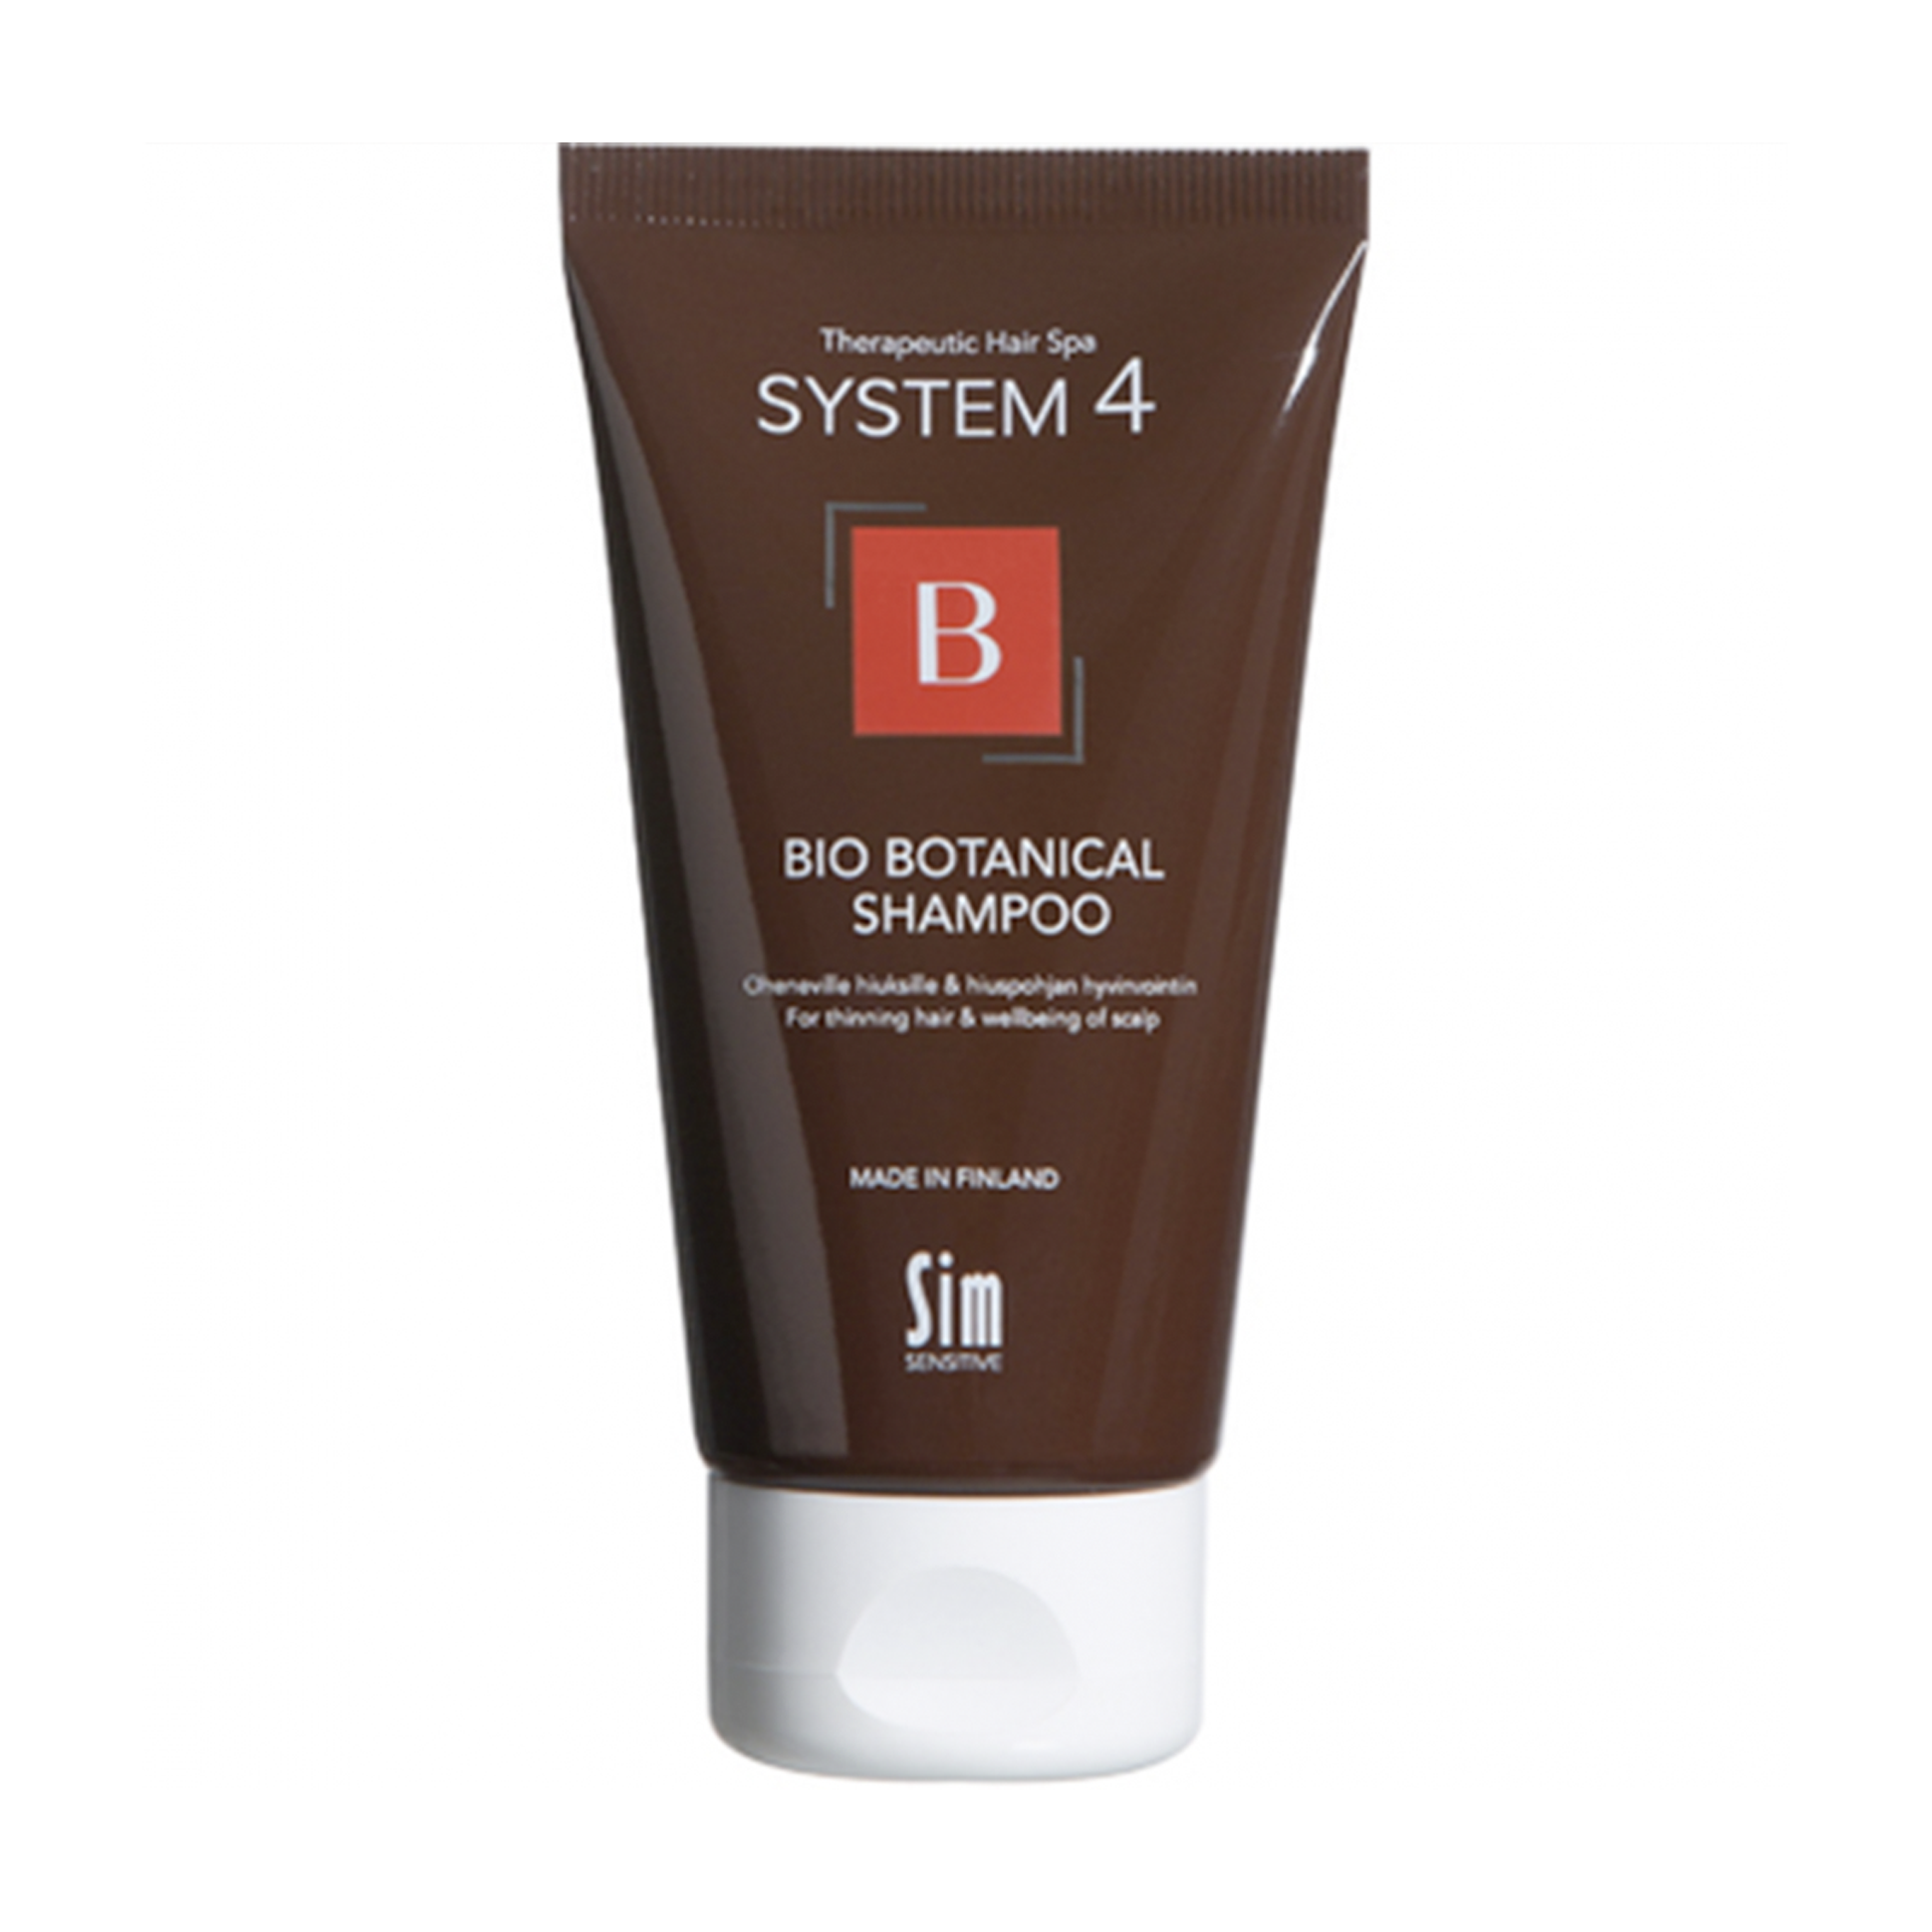 System 4 Bio Botanical Shampoo Sim Sensitive Био ботанический шампунь от выпадения волос